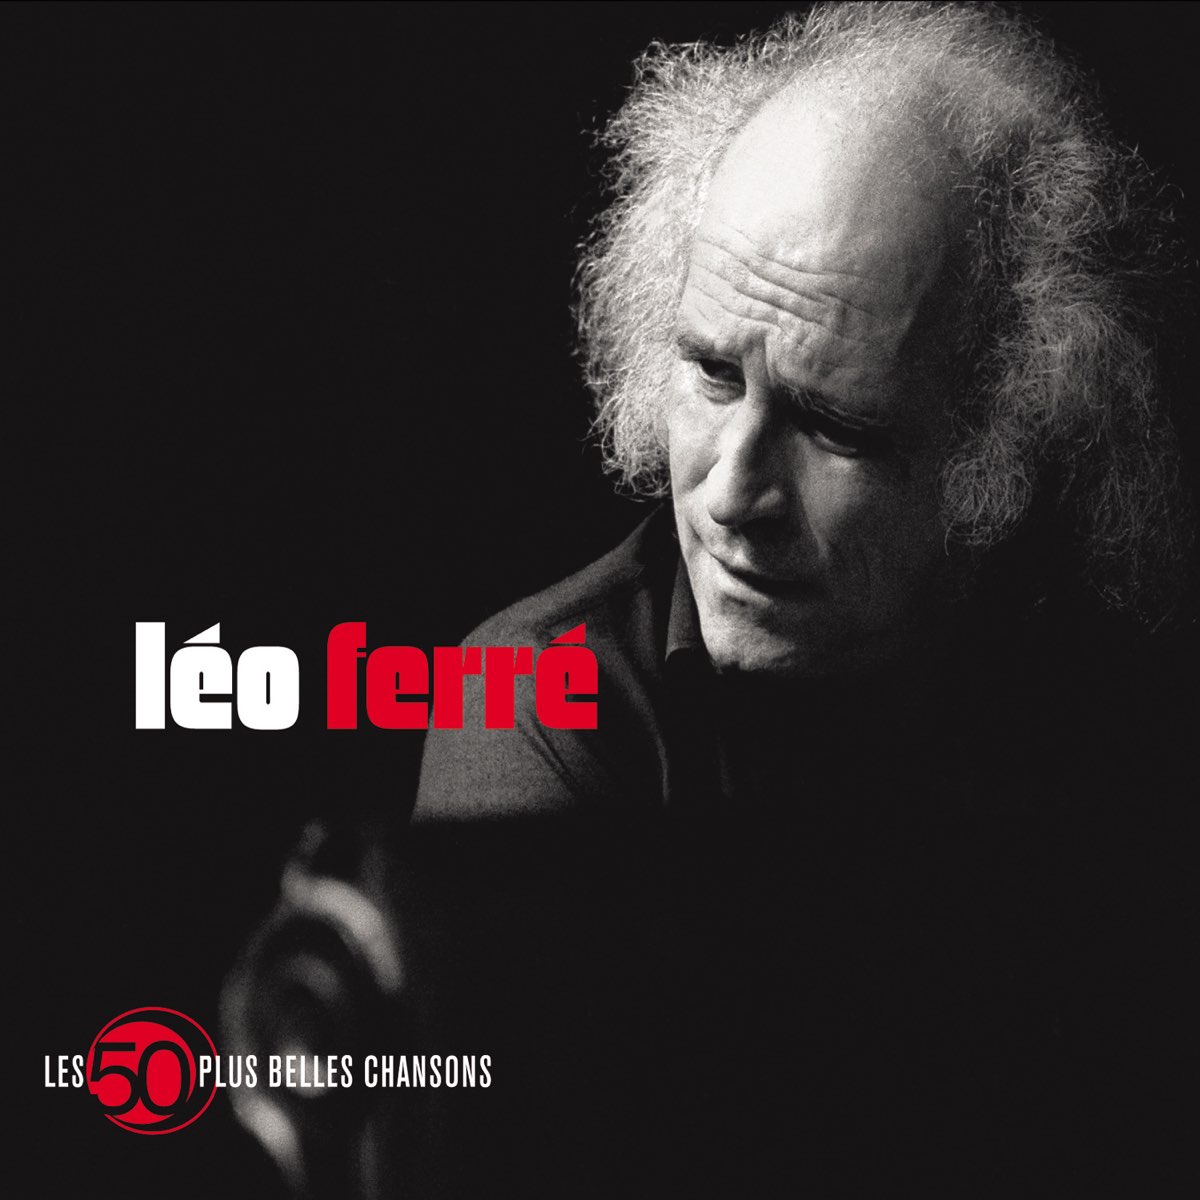 50 plus belles chansons – Album par Léo Ferré – Apple Music